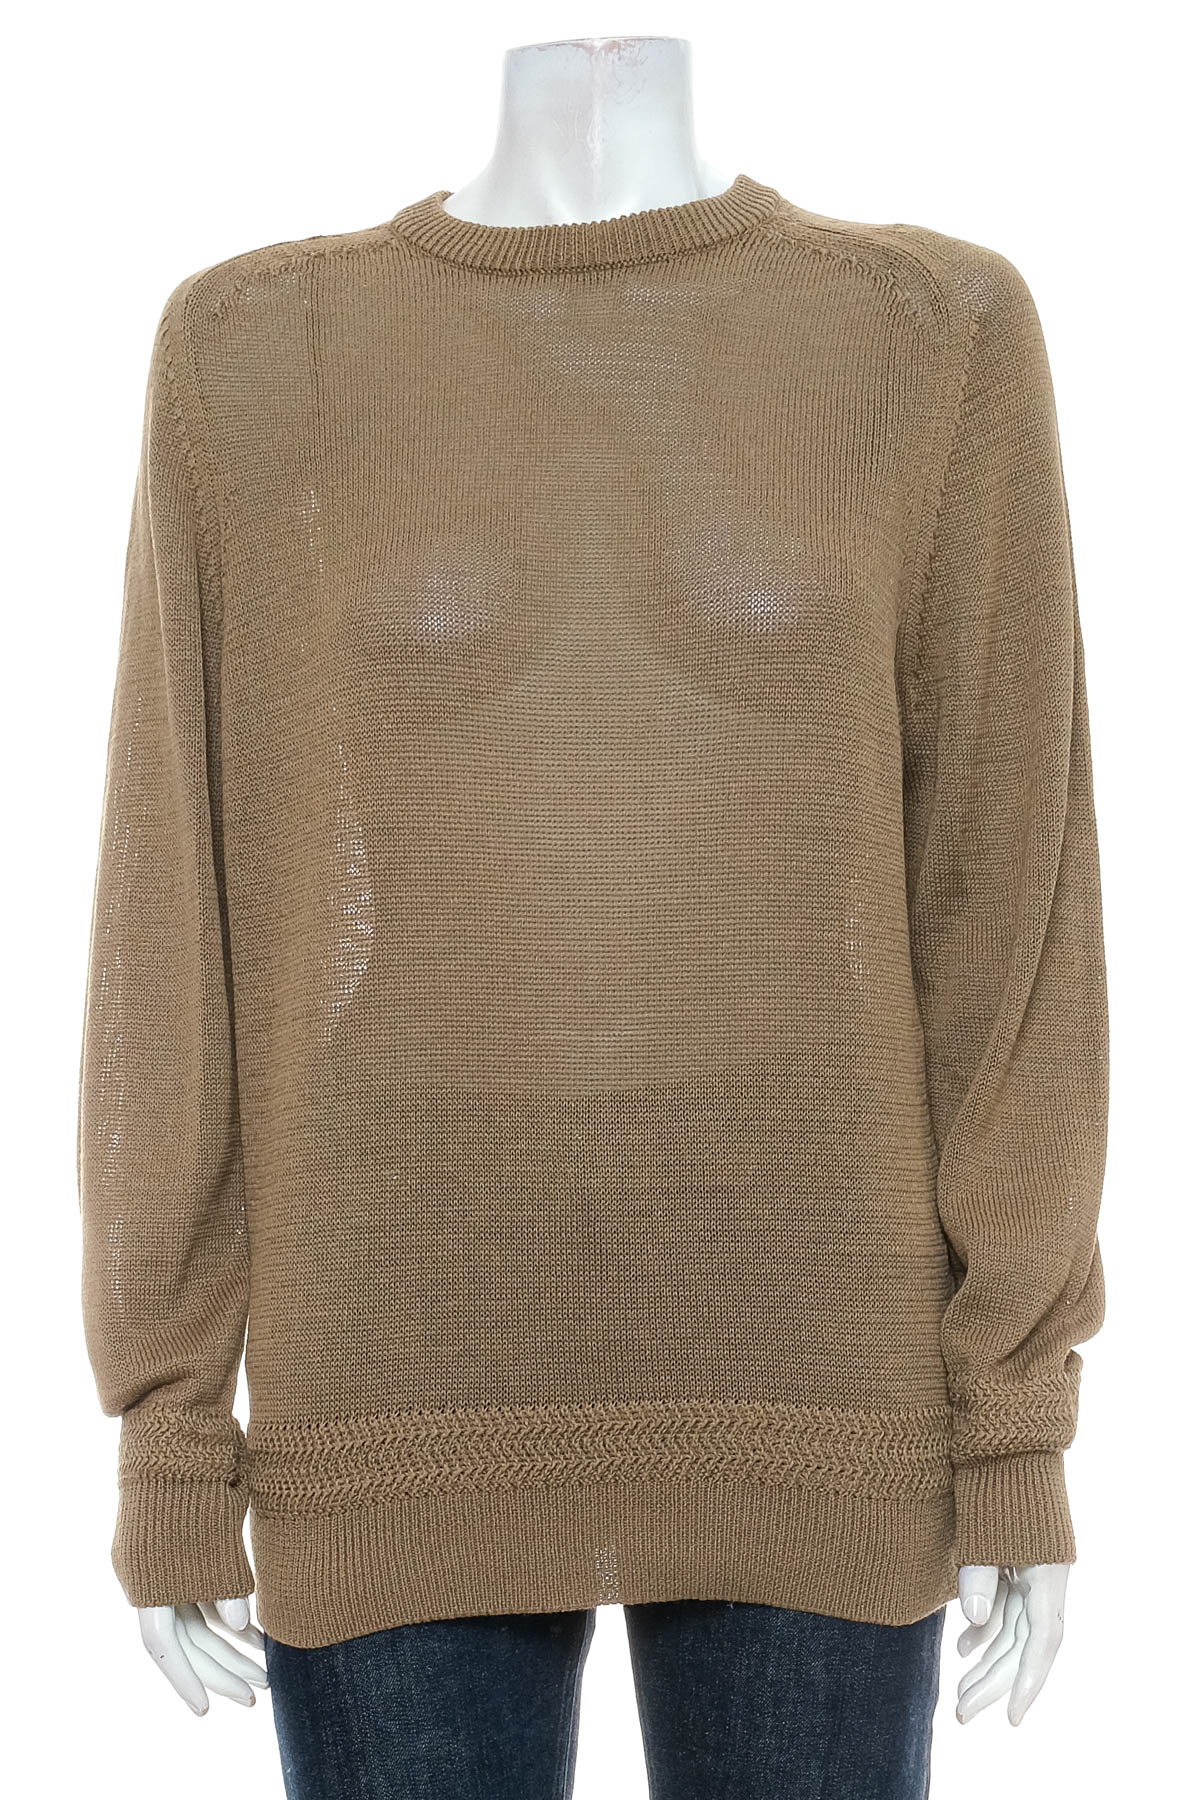 Women's sweater - UNIQLO - 0